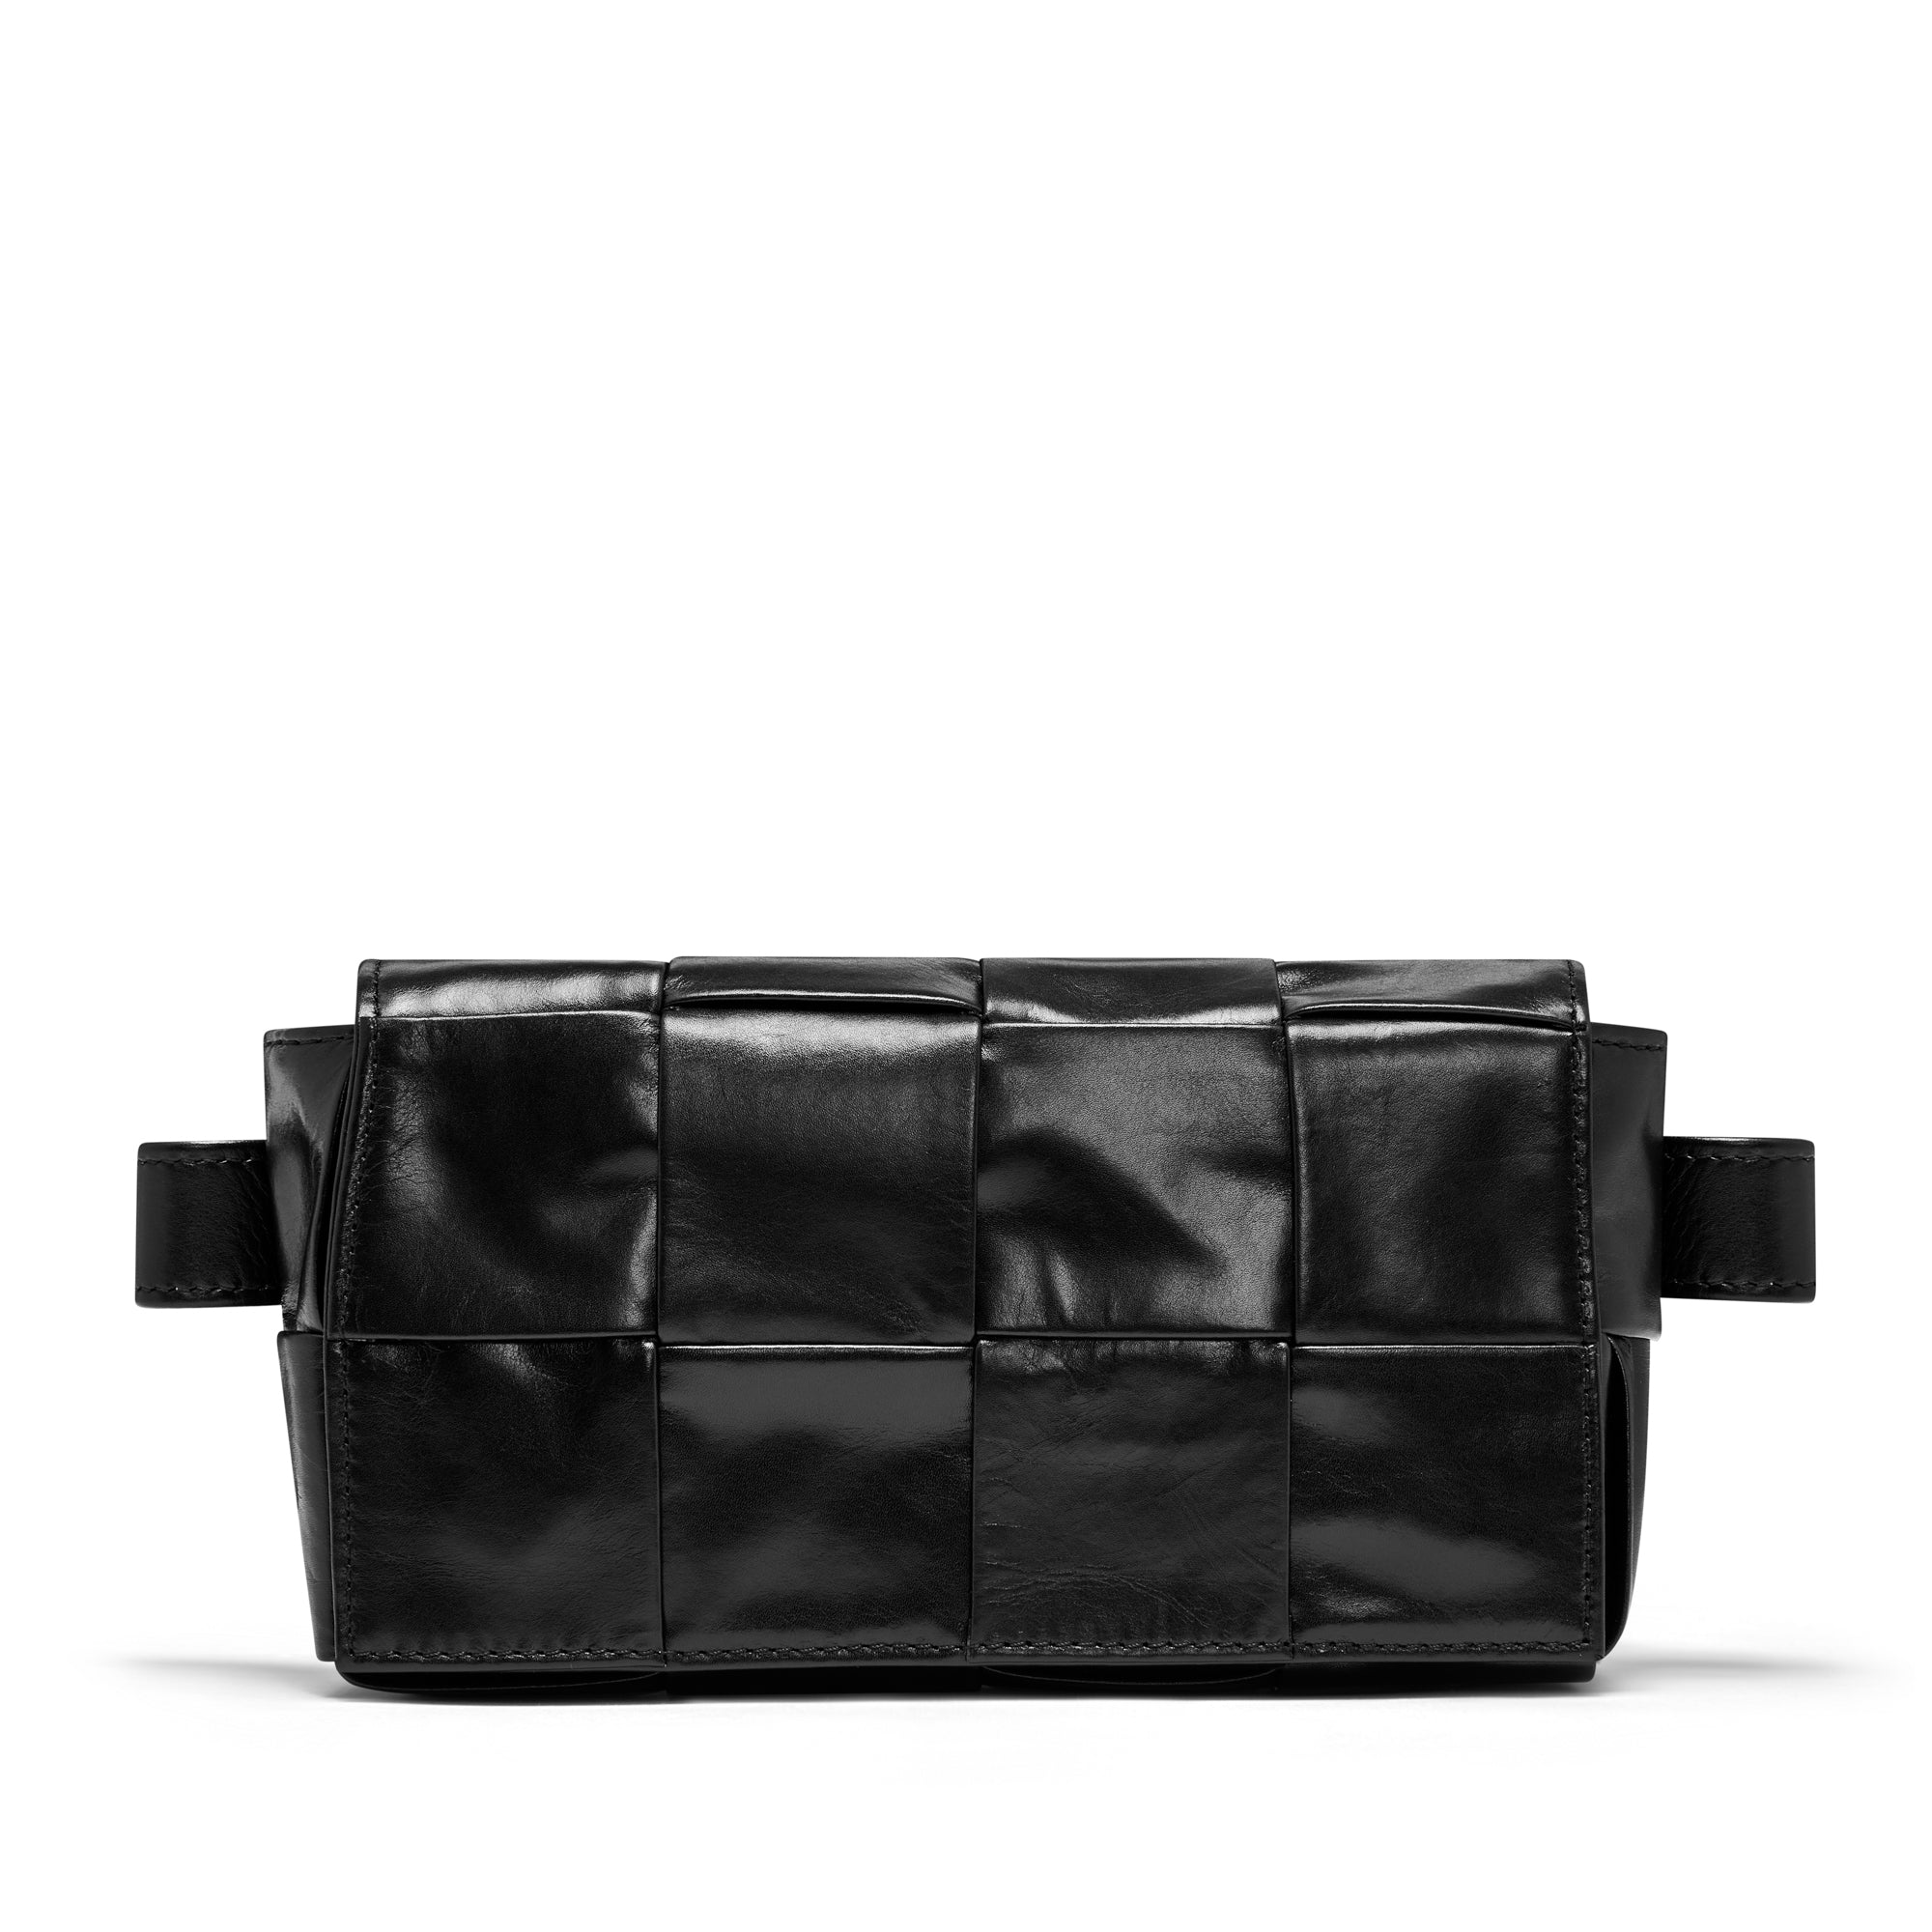 Bottega Veneta - Men’s Cassette Belt Bag - (Black/Silver) view 3